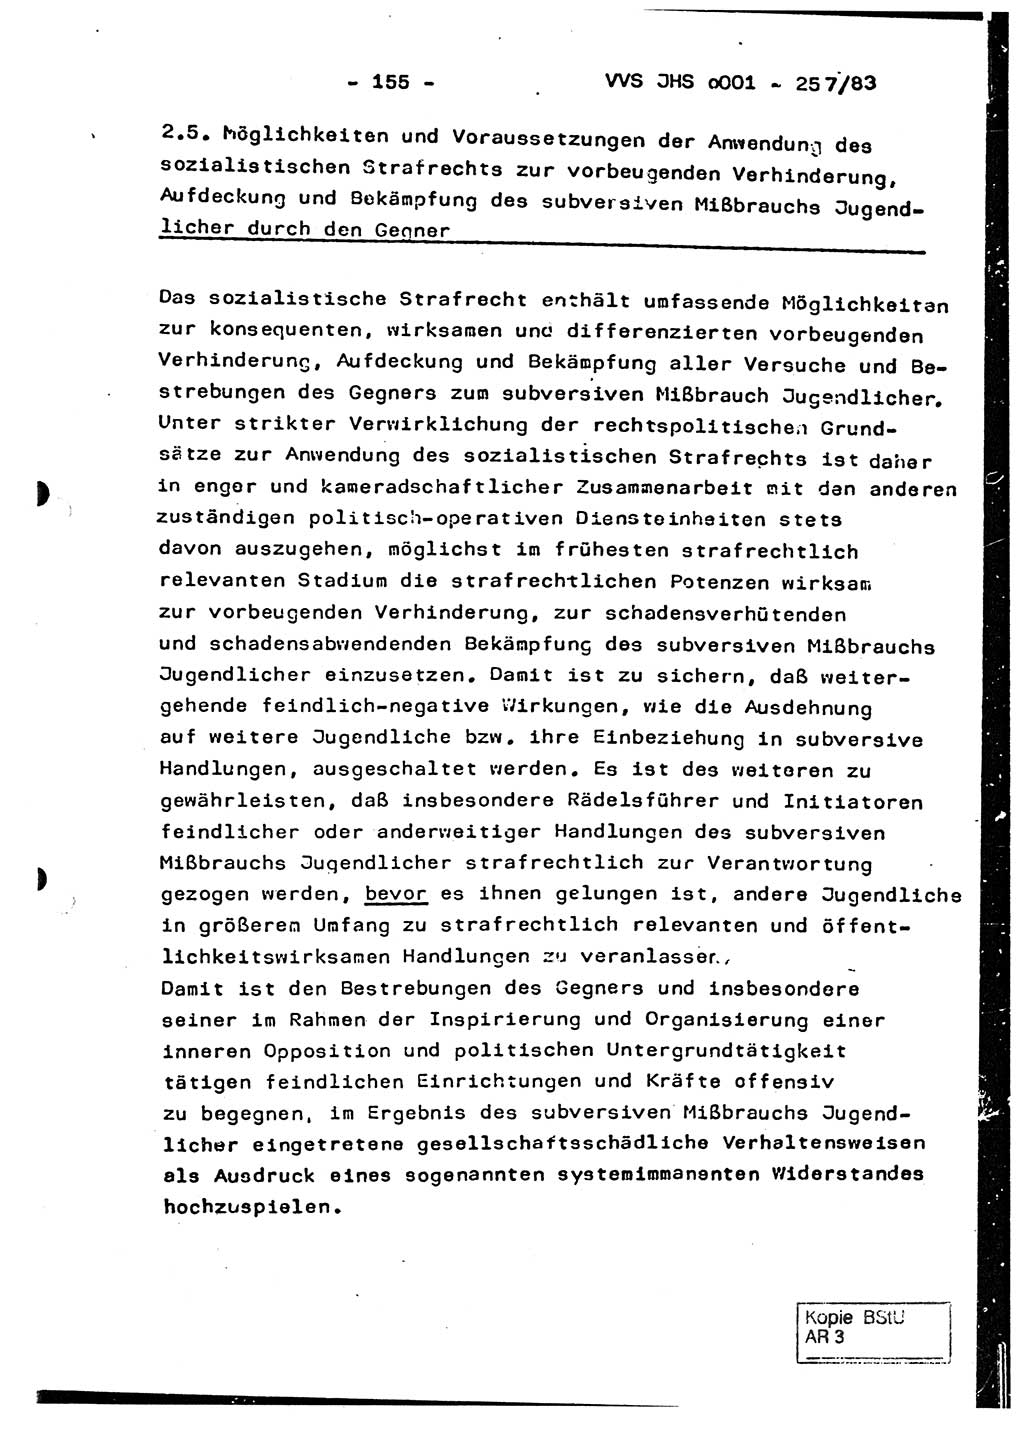 Dissertation, Oberst Helmut Lubas (BV Mdg.), Oberstleutnant Manfred Eschberger (HA IX), Oberleutnant Hans-Jürgen Ludwig (JHS), Ministerium für Staatssicherheit (MfS) [Deutsche Demokratische Republik (DDR)], Juristische Hochschule (JHS), Vertrauliche Verschlußsache (VVS) o001-257/83, Potsdam 1983, Seite 155 (Diss. MfS DDR JHS VVS o001-257/83 1983, S. 155)